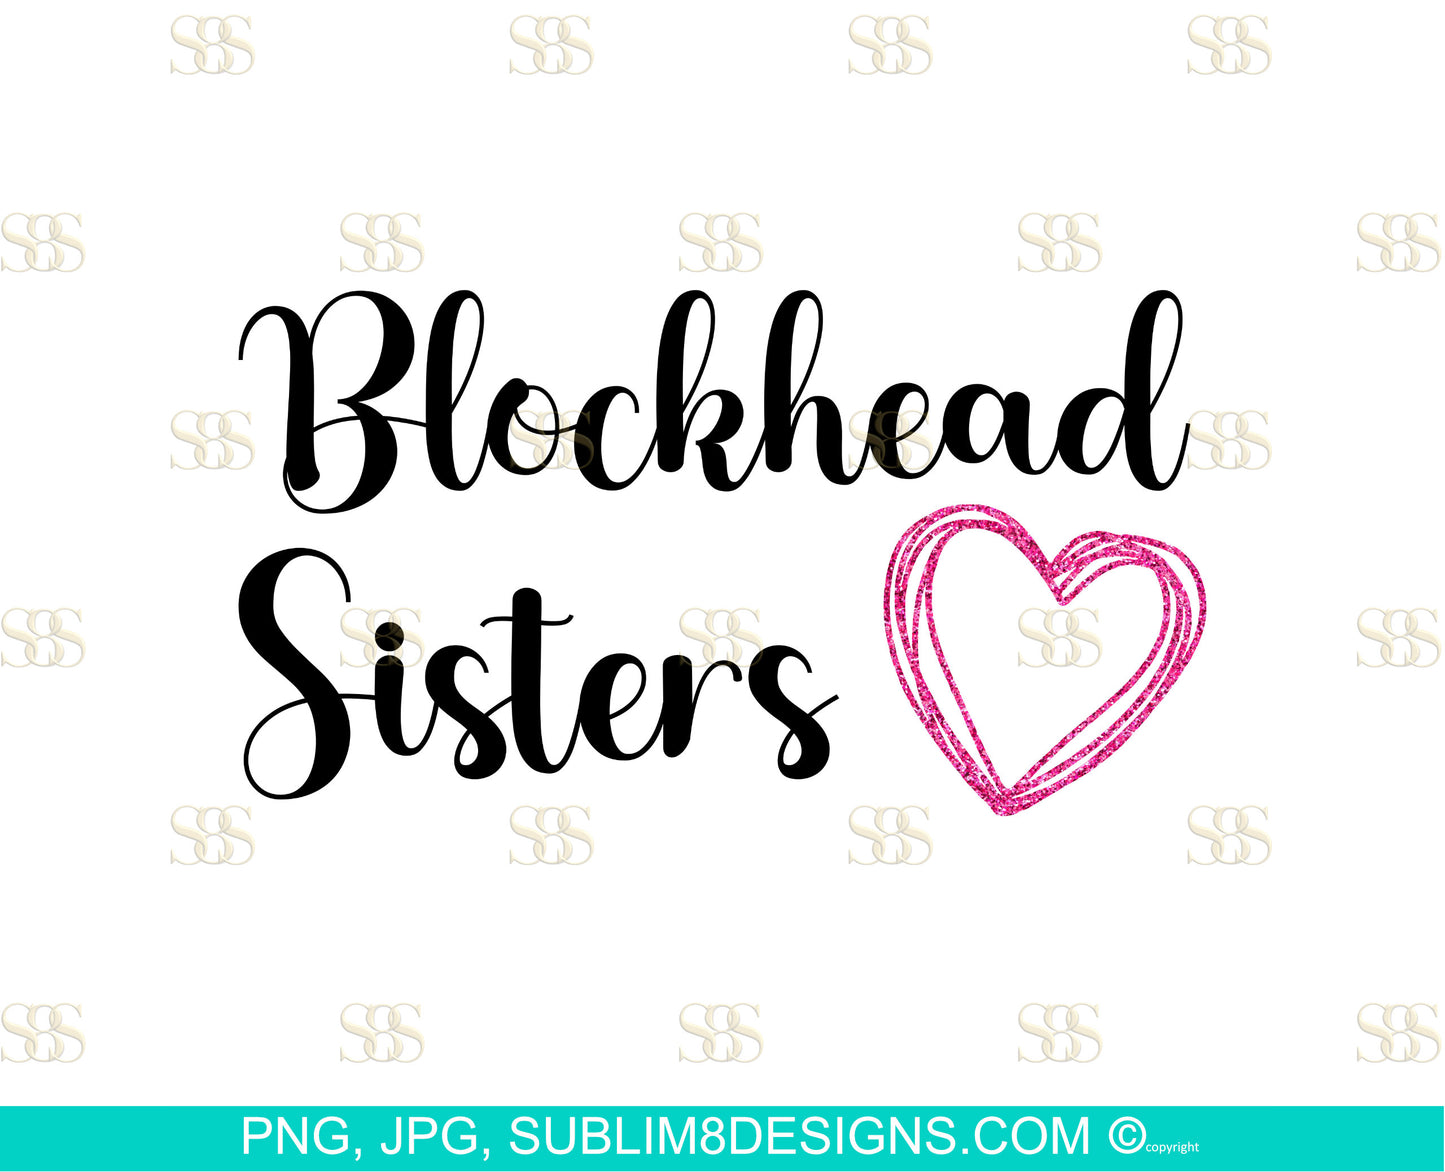 Blockhead Sisters